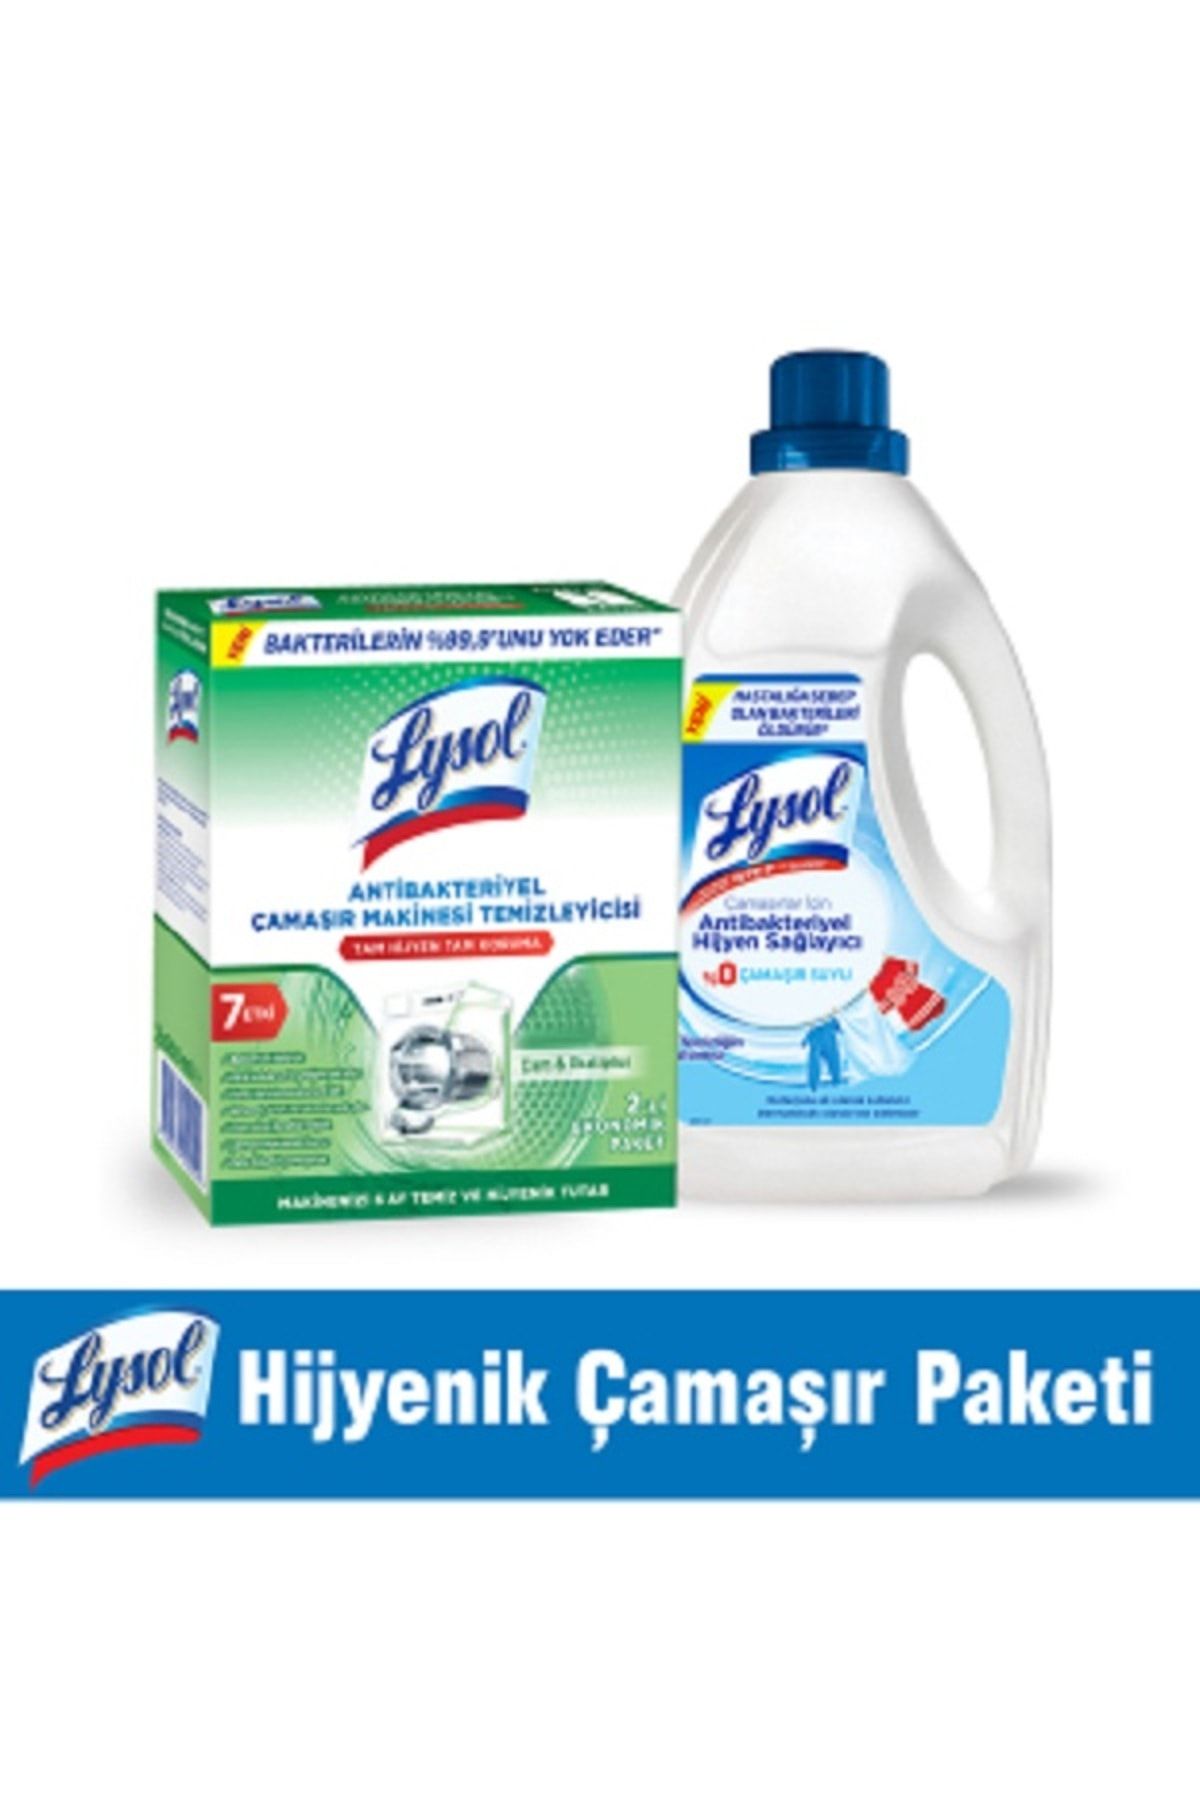 Lysol Hijyenik Çamaşır Paketi Lysol Makine Temizleyici 2x250ml & Çamaşırlar için Hijyen Sağlayıcı 1200 ml